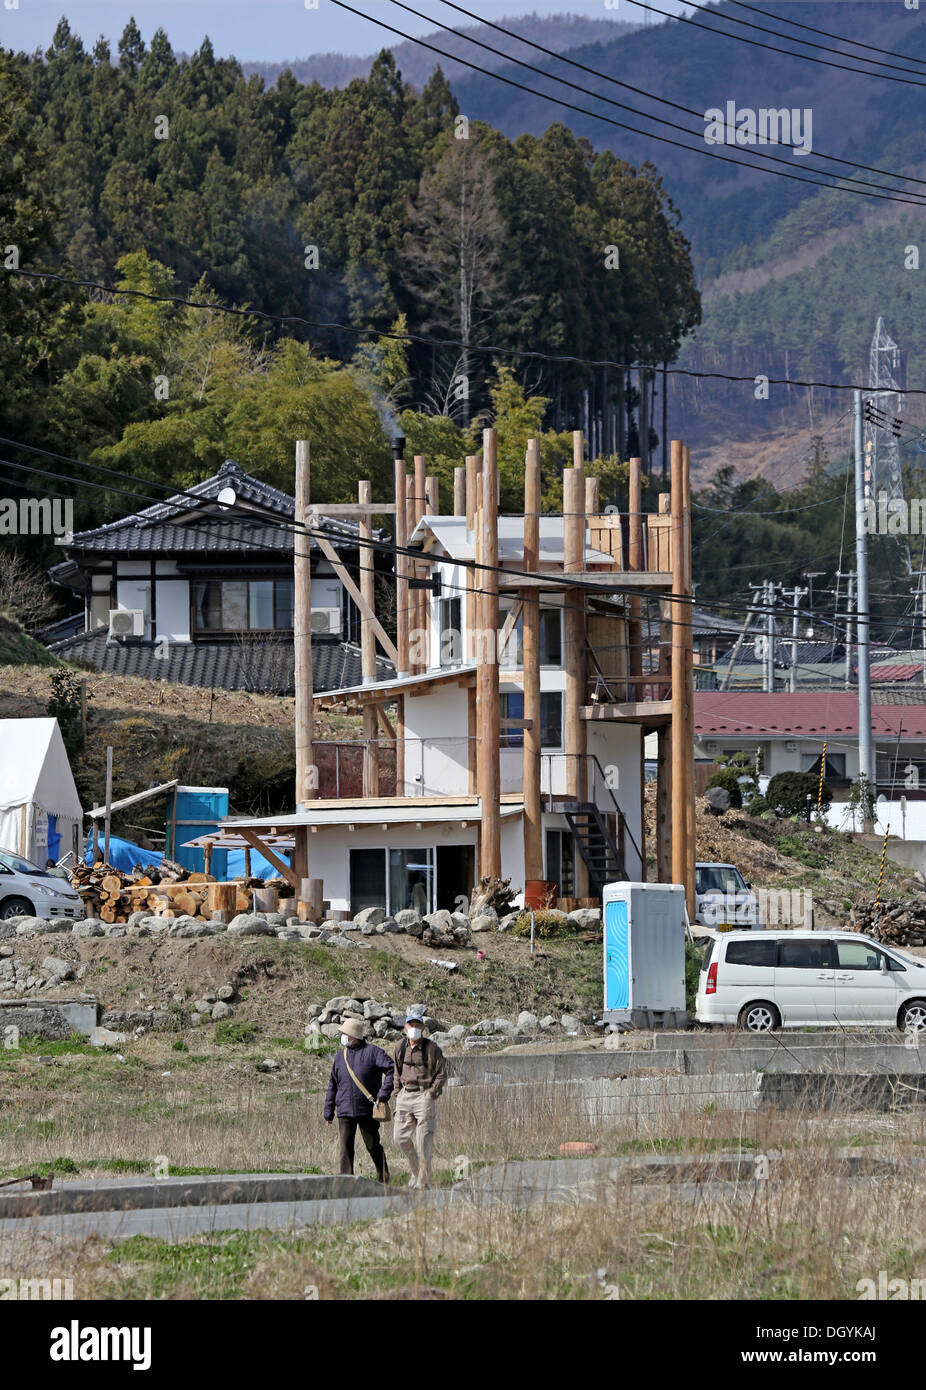 Le Japon après la tempête - Accueil pour tous dans Rikuzentakata, au Japon. Architecte : Toyo Ito, Kumiko Inui, Akihisa Hirata et Kimiko, 2013 Banque D'Images